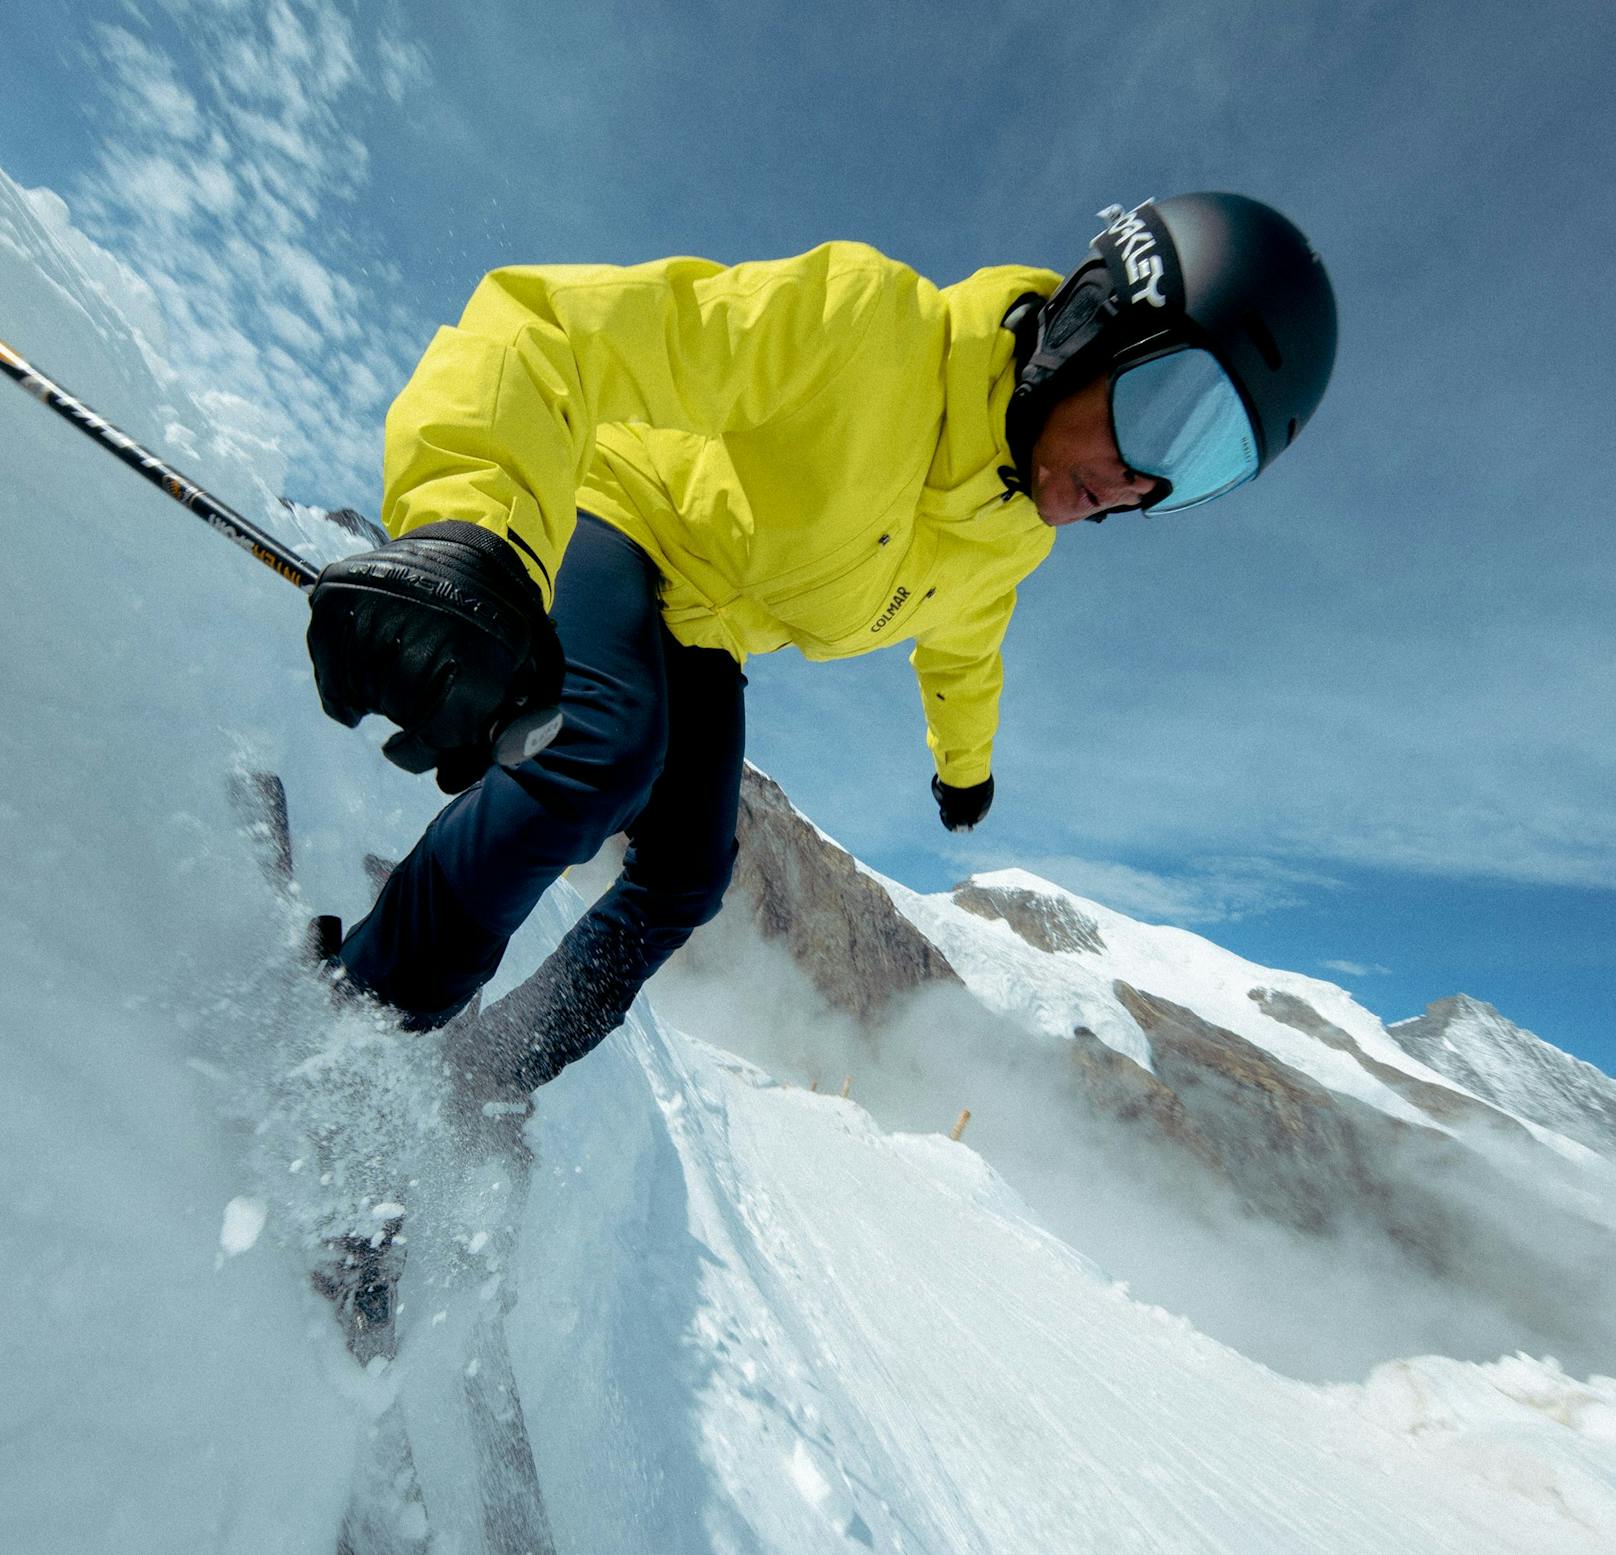 Snowboarder Kevin Ignacia - fährt für den Zalando Snowdown auch Ski. Seine Looks gibt es <a rel="nofollow" href="https://www.zalando.at/outfits/Y0PKW8lFRMS/"><strong>HIER</strong></a>.